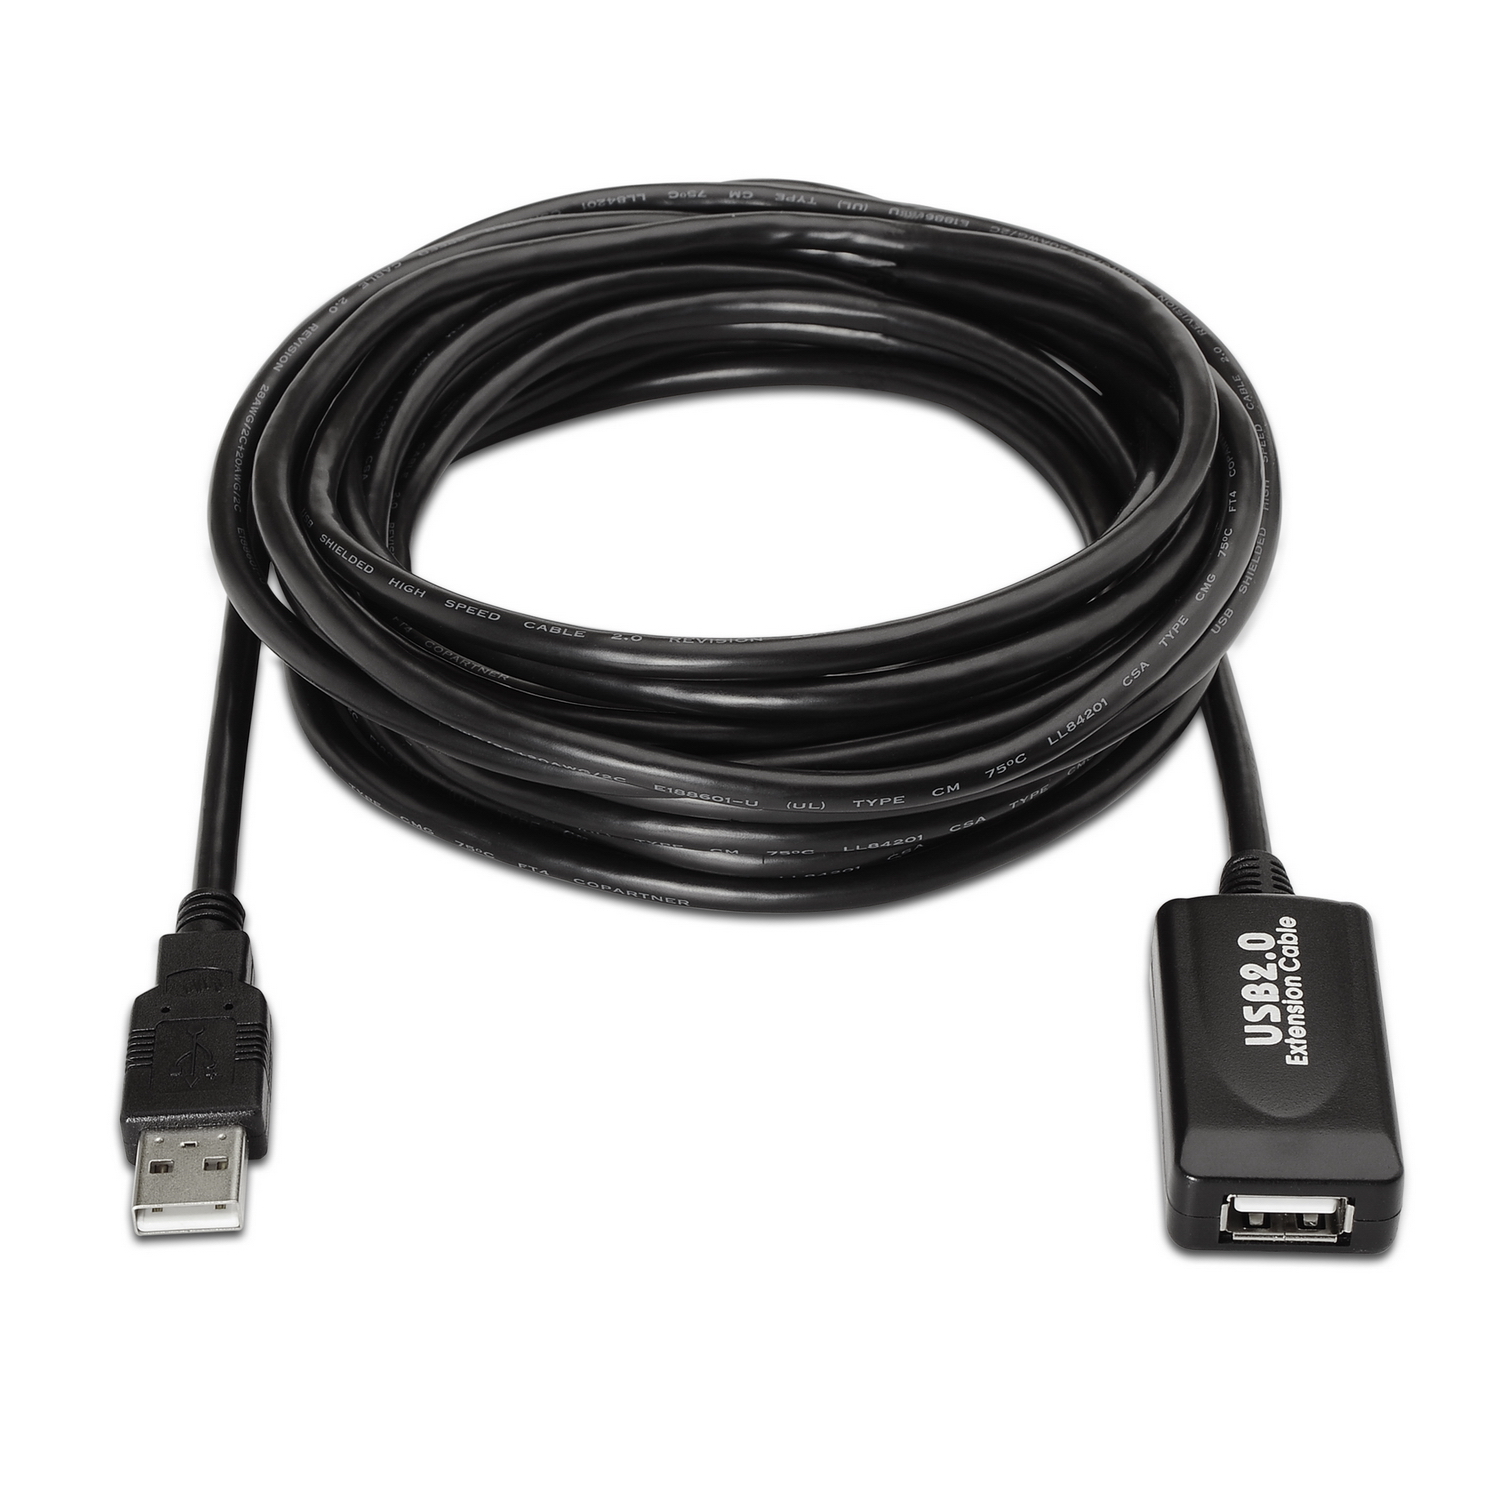 Prolongador Cable Alargador USB Hembra Macho USB 2.0 para PC Extension 1m  #1